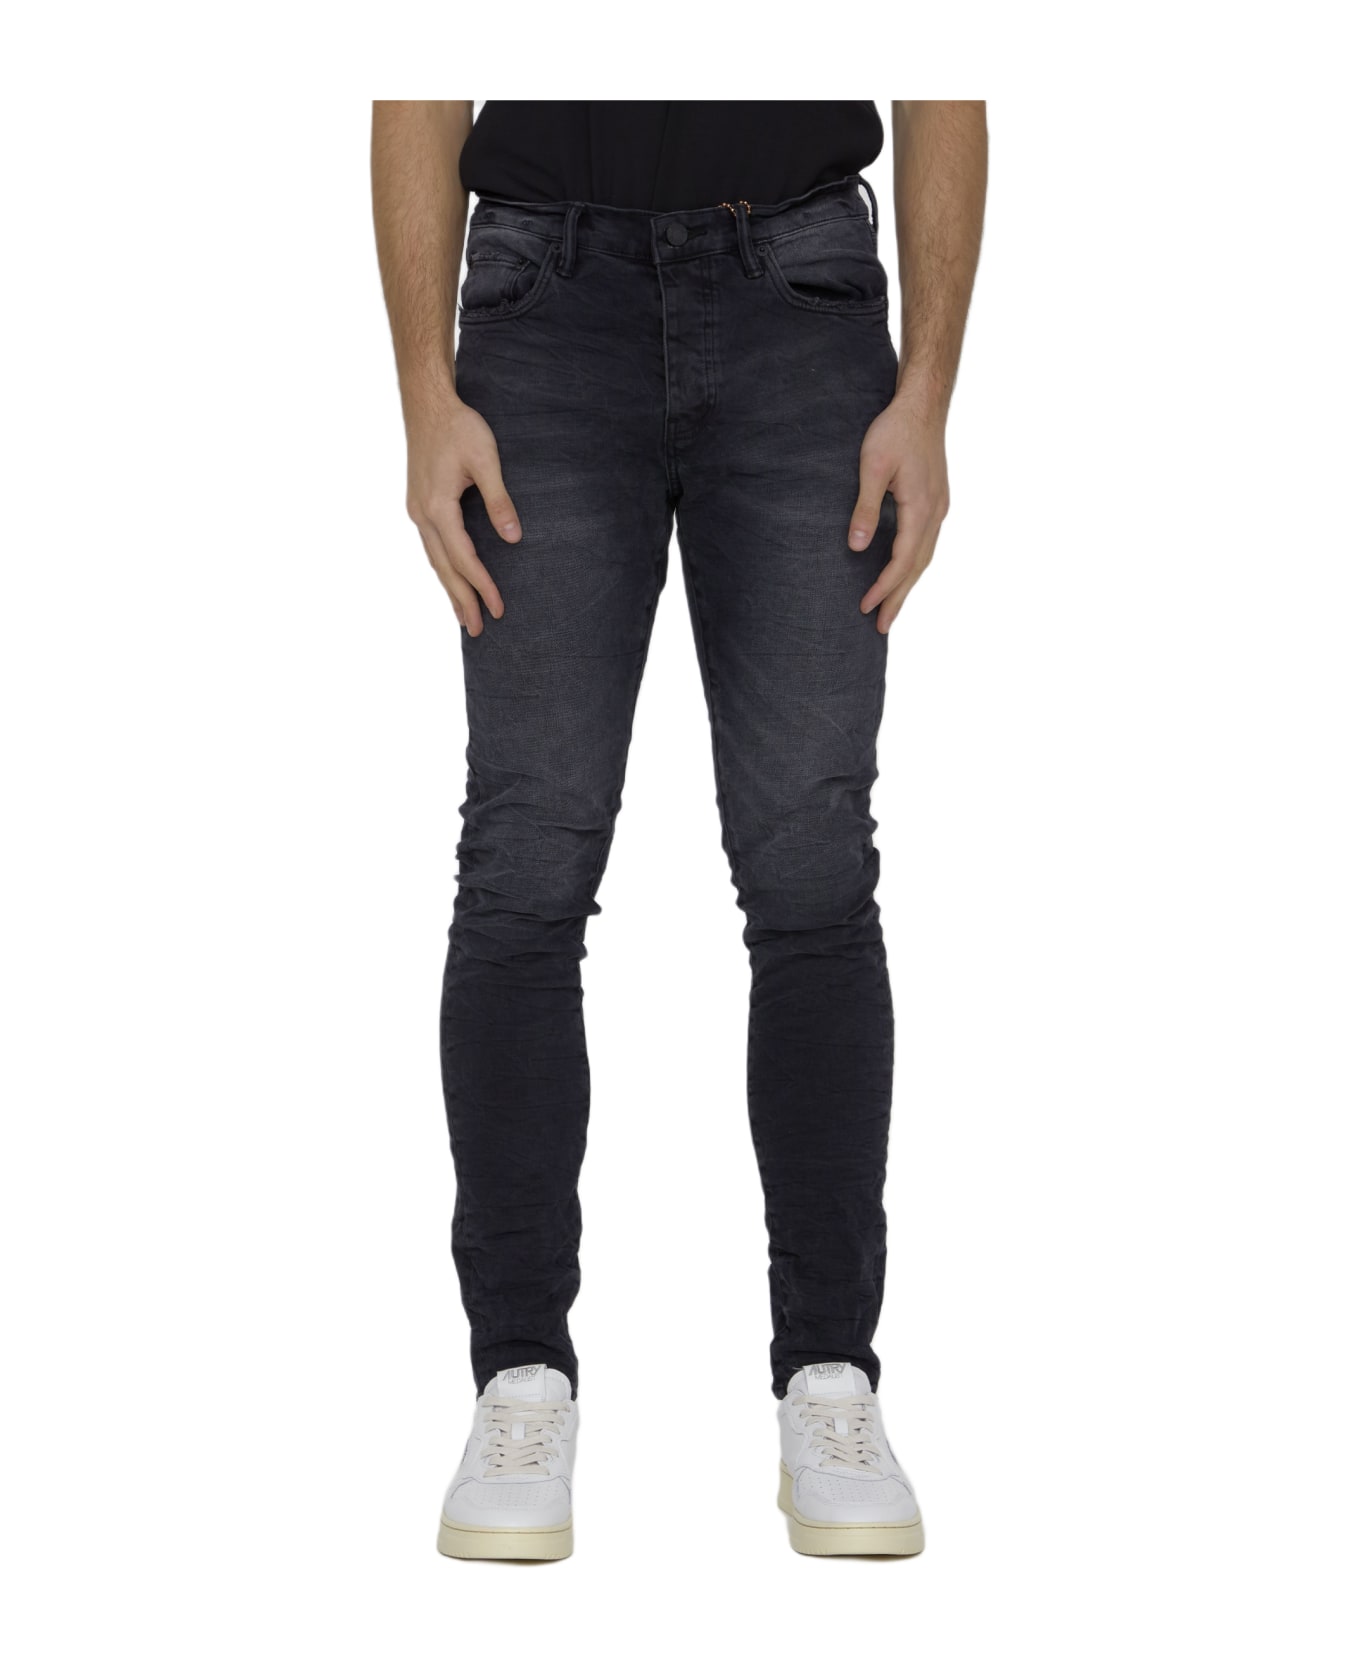 Purple Brand Skinny Jeans In Denim - BLACK デニム